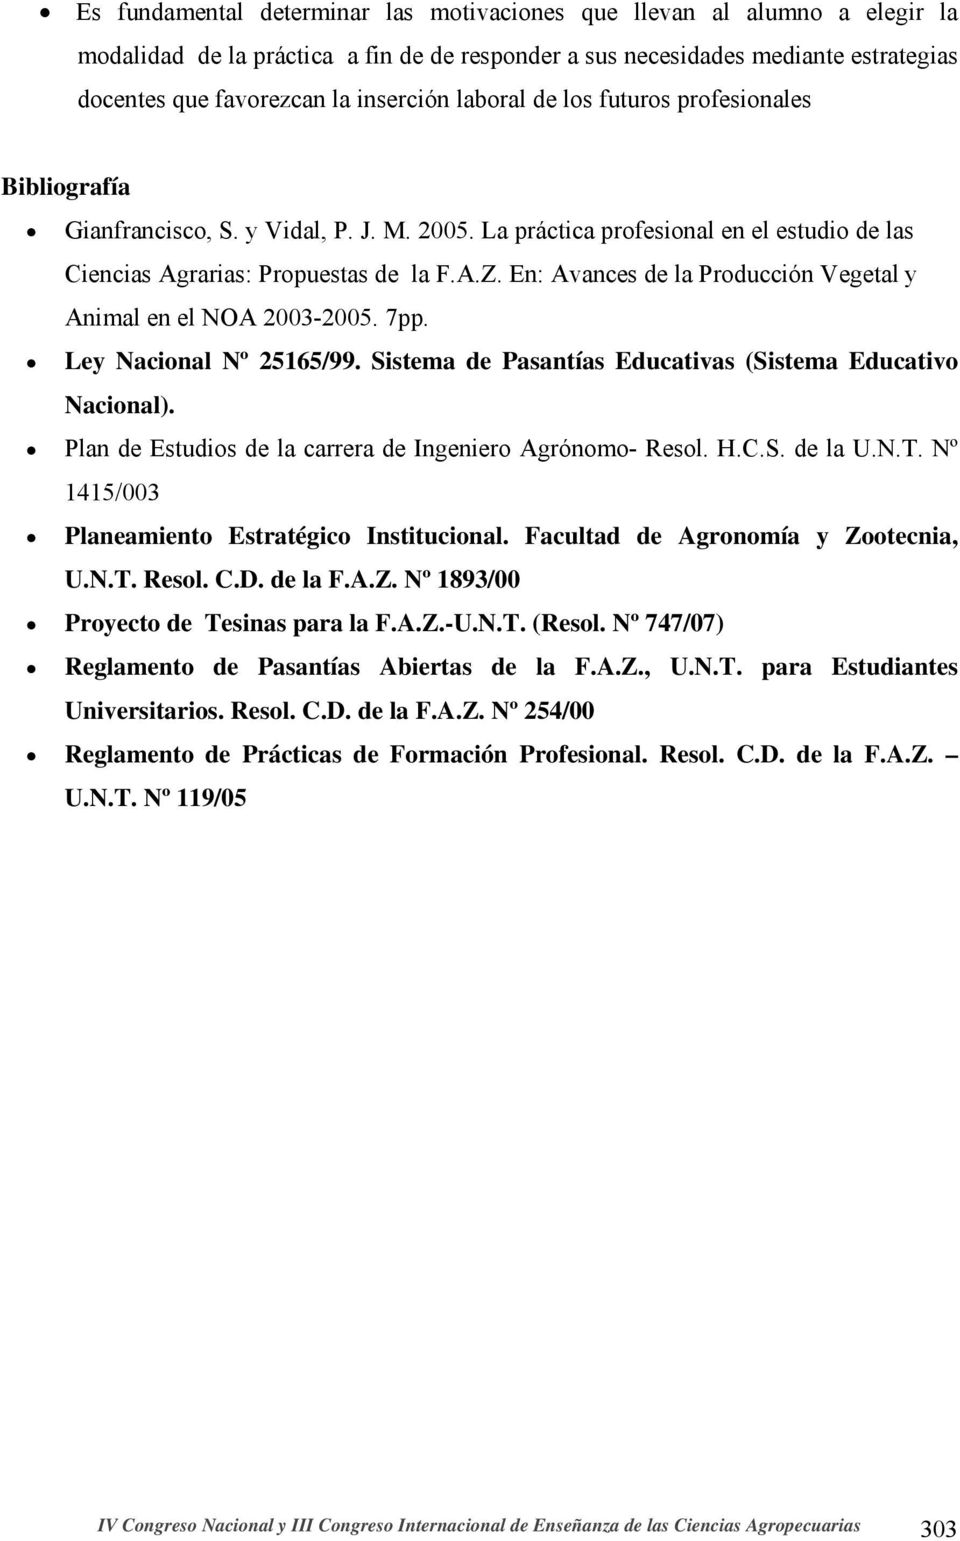 En: Avances de la Producción Vegetal y Animal en el NOA 2003-2005. 7pp. Ley Nacional Nº 25165/99. Sistema de Pasantías Educativas (Sistema Educativo Nacional).